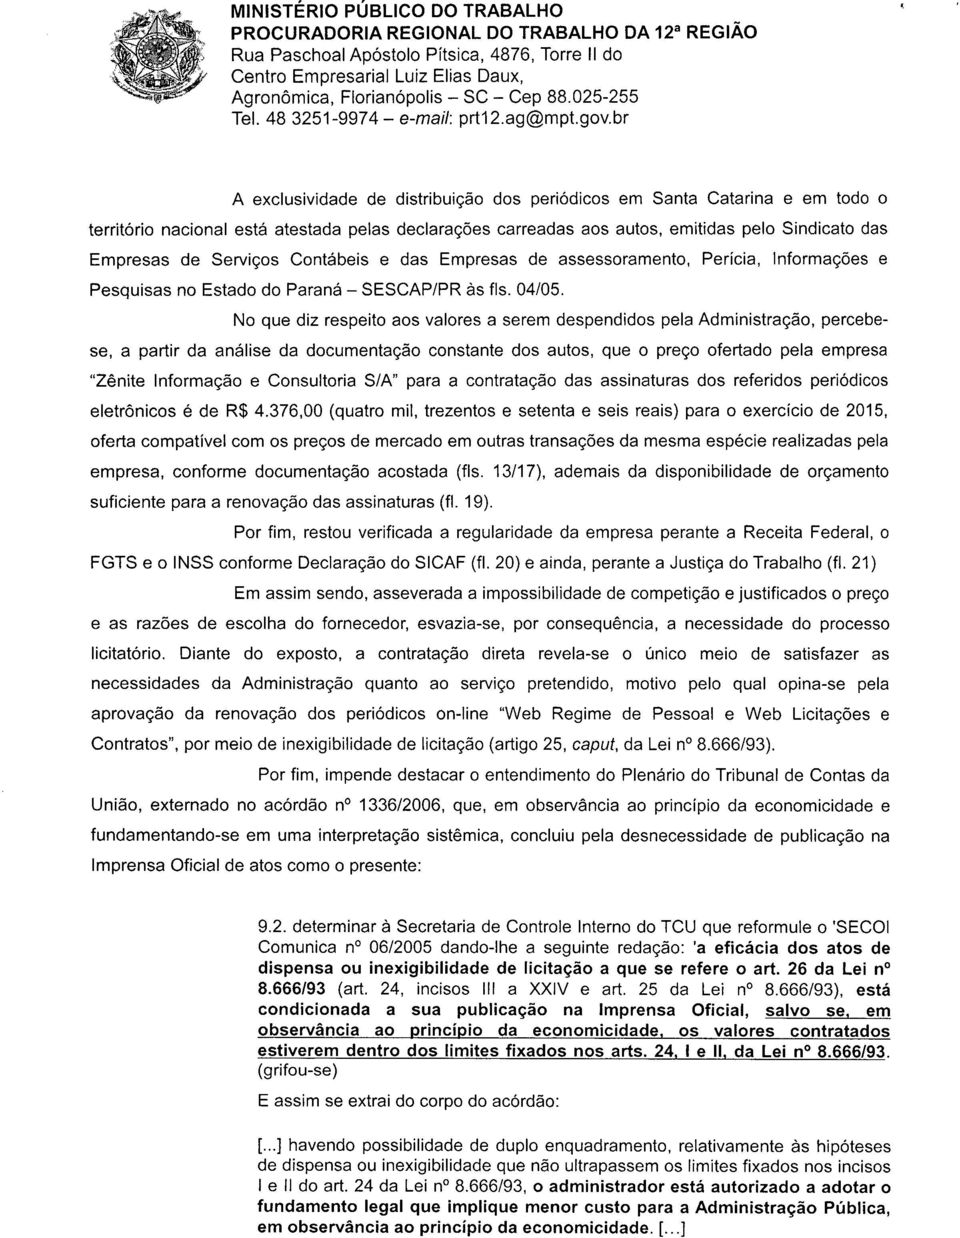 Serviços Contábeis e das Empresas de assessoramento, Perícia, Informações e Pesquisas no Estado do Paraná - SESCAP/PR às fls. 04/05.